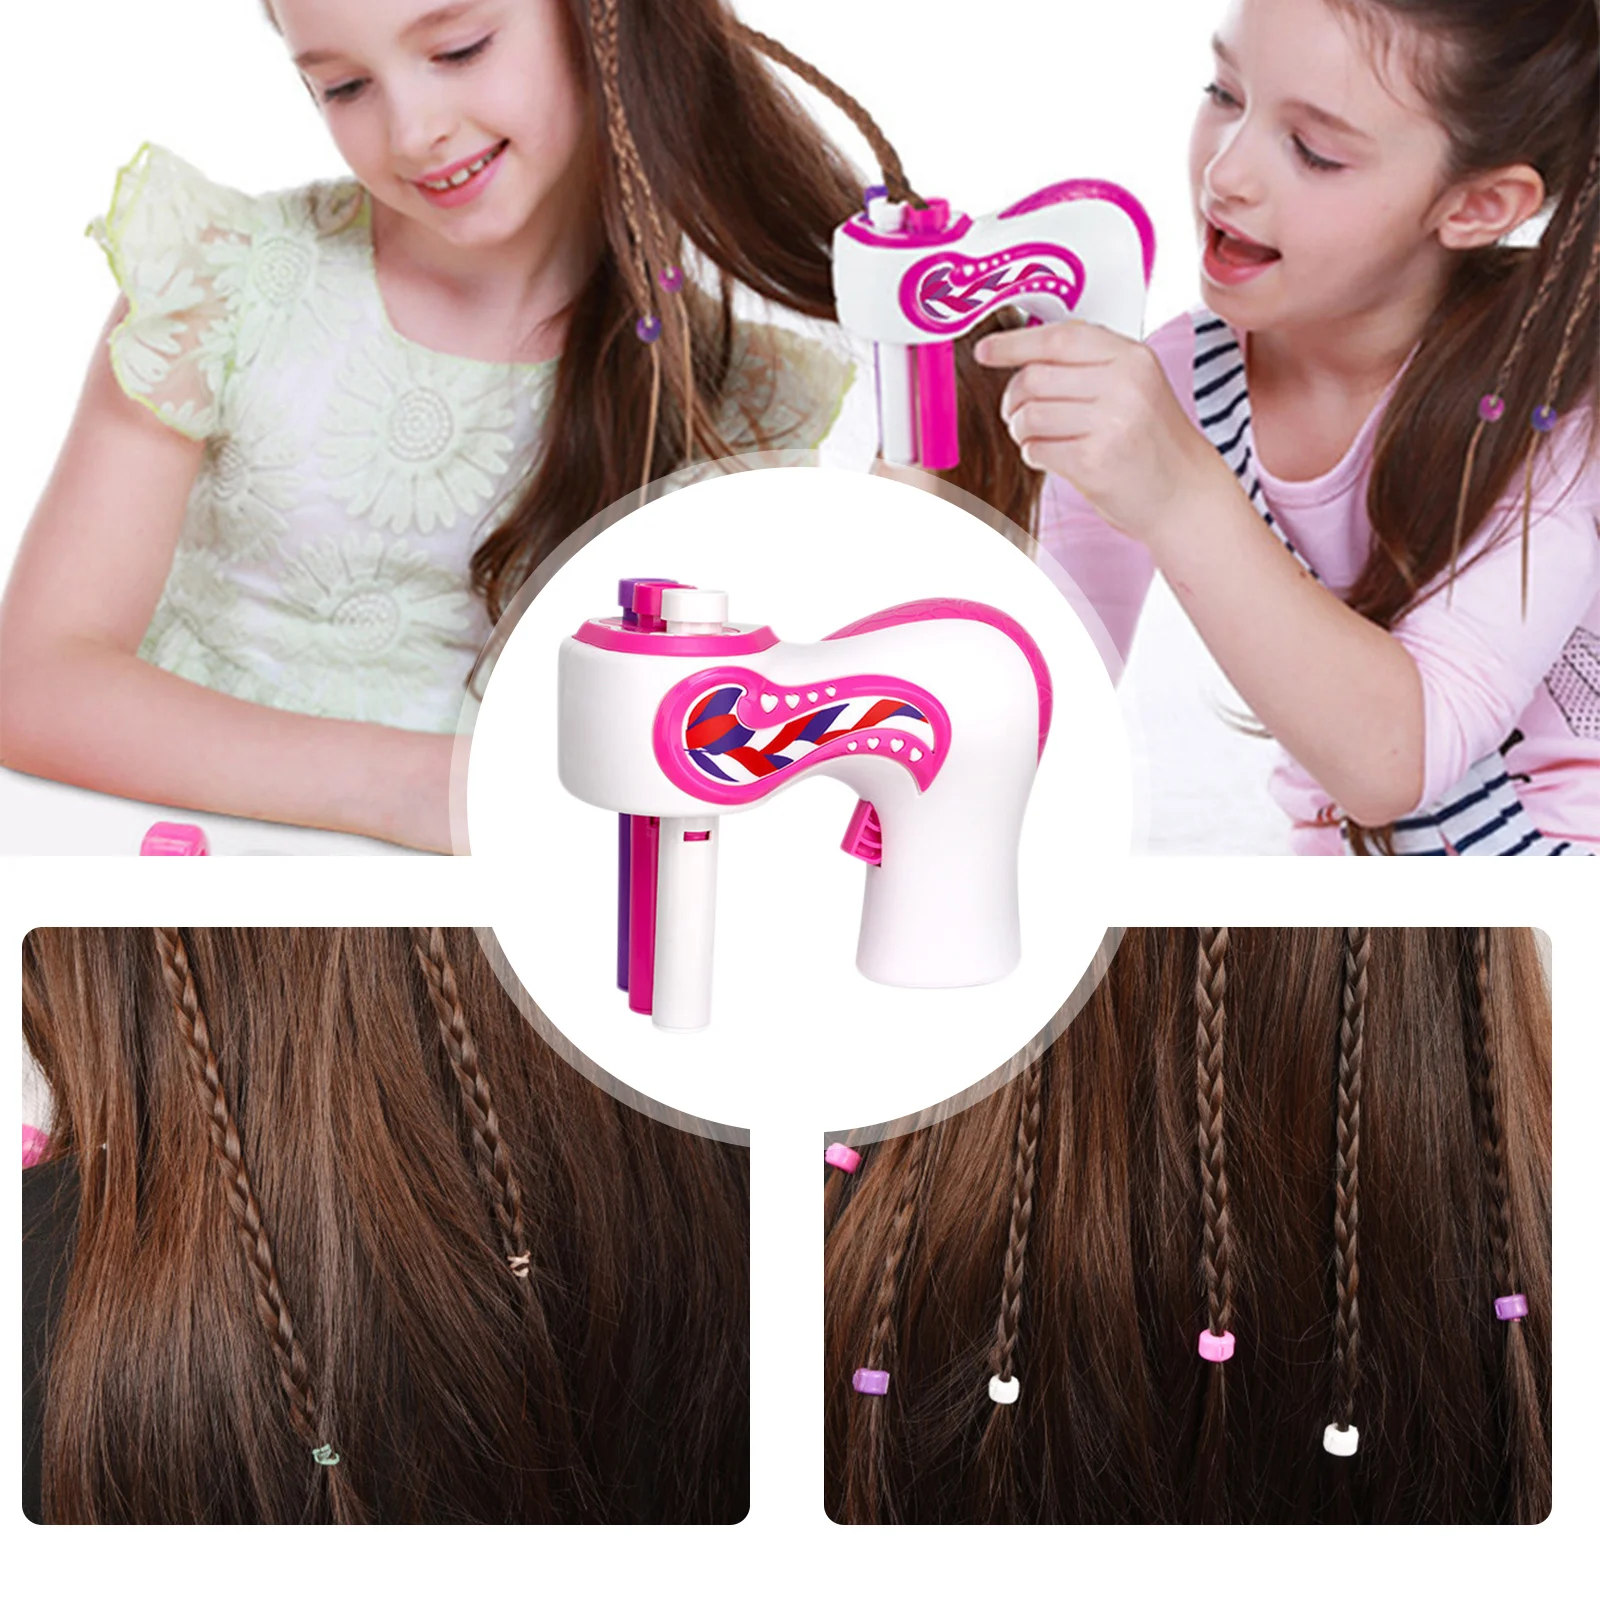 Автоматическая машинка для плетения волос девочек своими руками спиральная